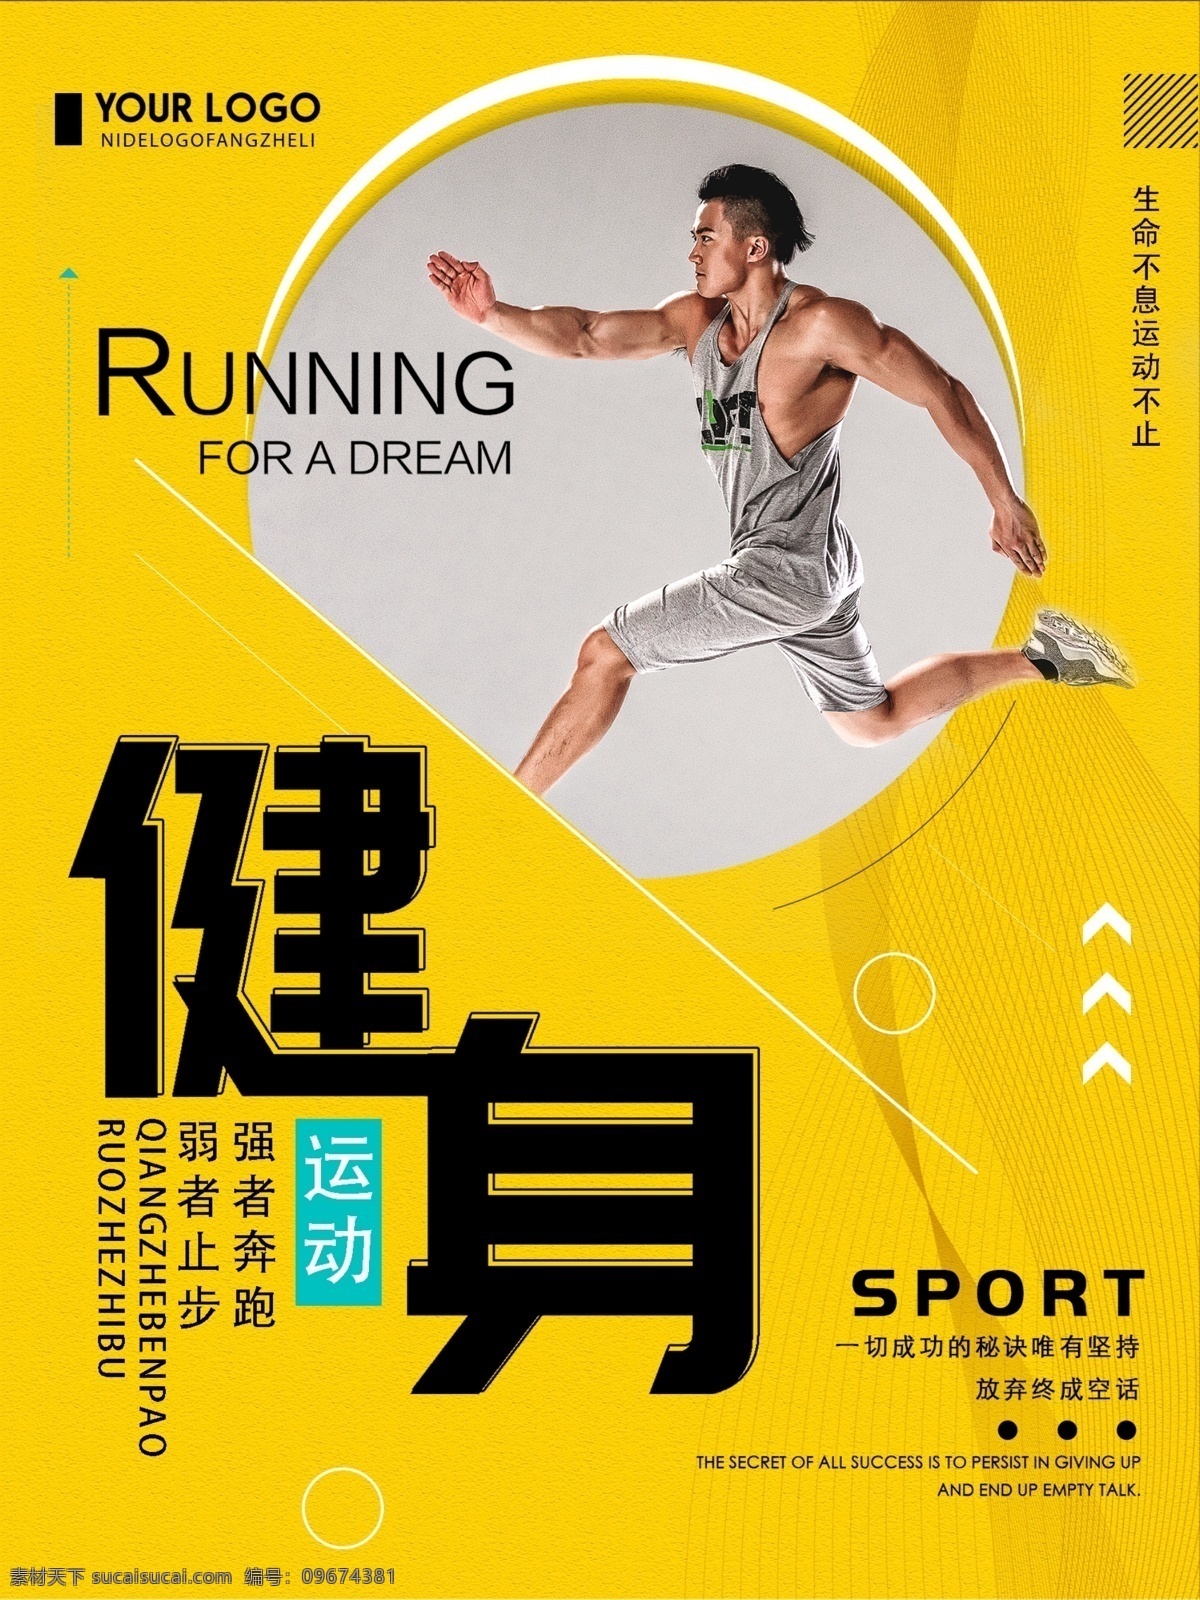 橙色 创意 简约 健身 运动 宣传海报 健身运动 体育运动 健身宣传 创意健身海报